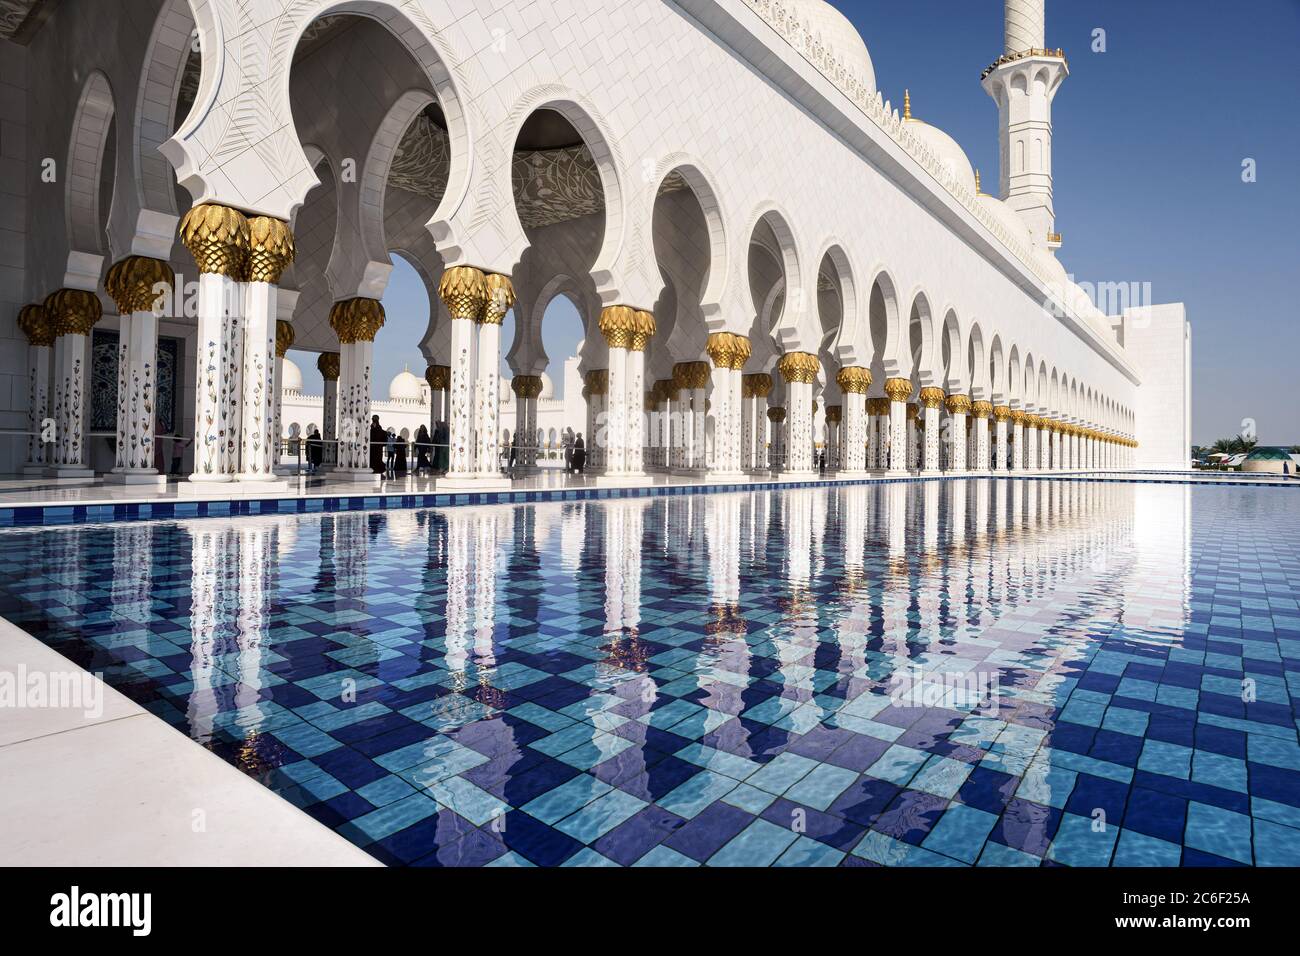 Blick auf die weißen Säulen der Abu Dhabi Moschee, die sich an einem sonnigen Tag mit blauem Himmel im Wasser des Pools spiegeln Stockfoto